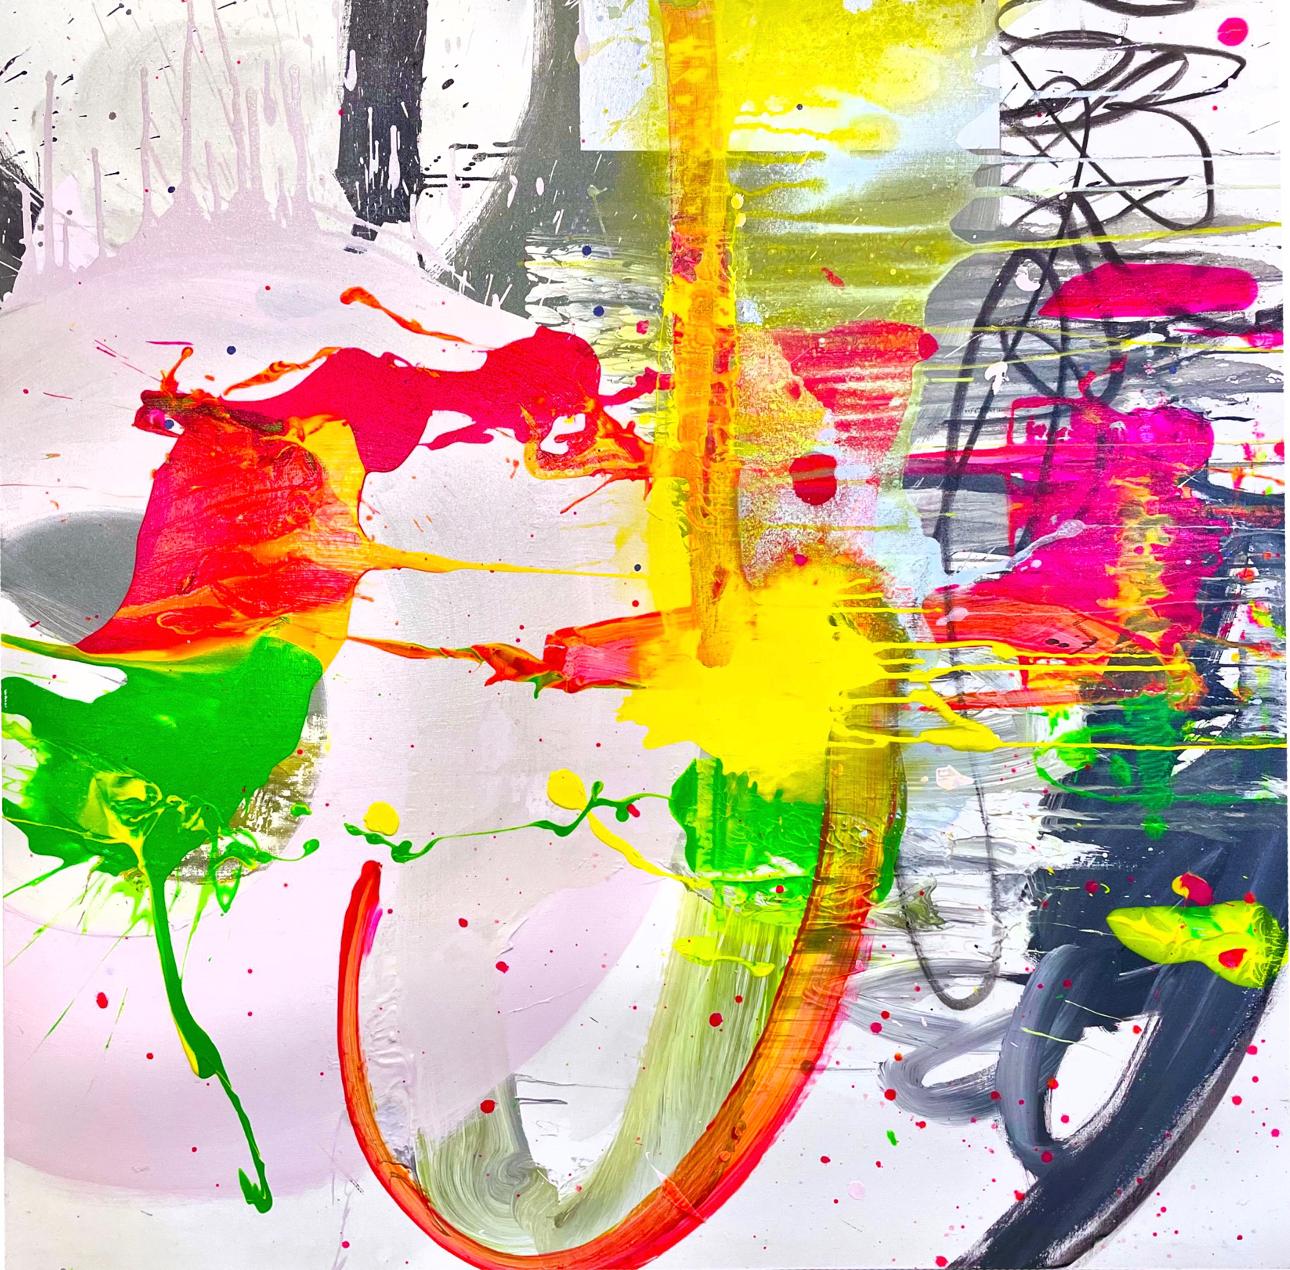 Let Go - Große Acrylfarbe auf Leinwand im abstrakten Expressionismus-Stil – Mixed Media Art von Chuck Hipsher